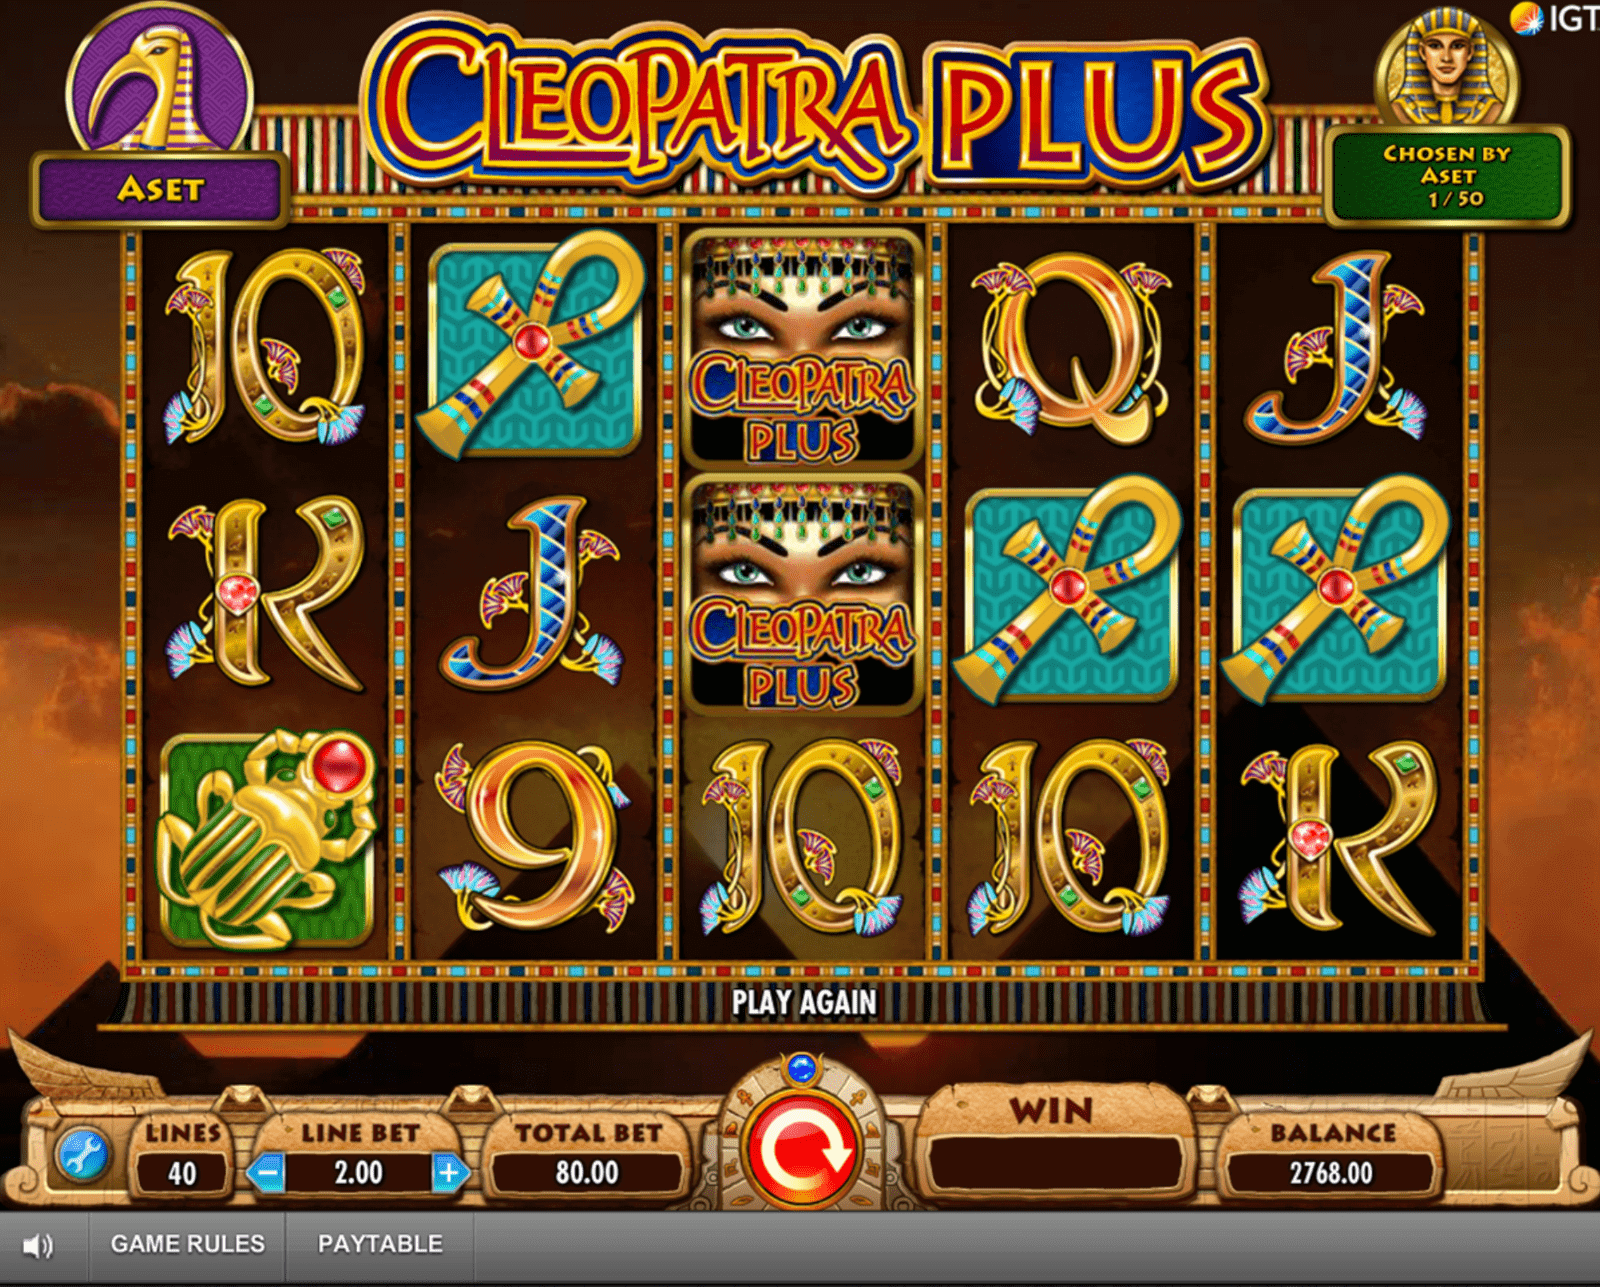 Jugar a la tragamonedas gratis Cleopatra Plus de IGT en casinos online